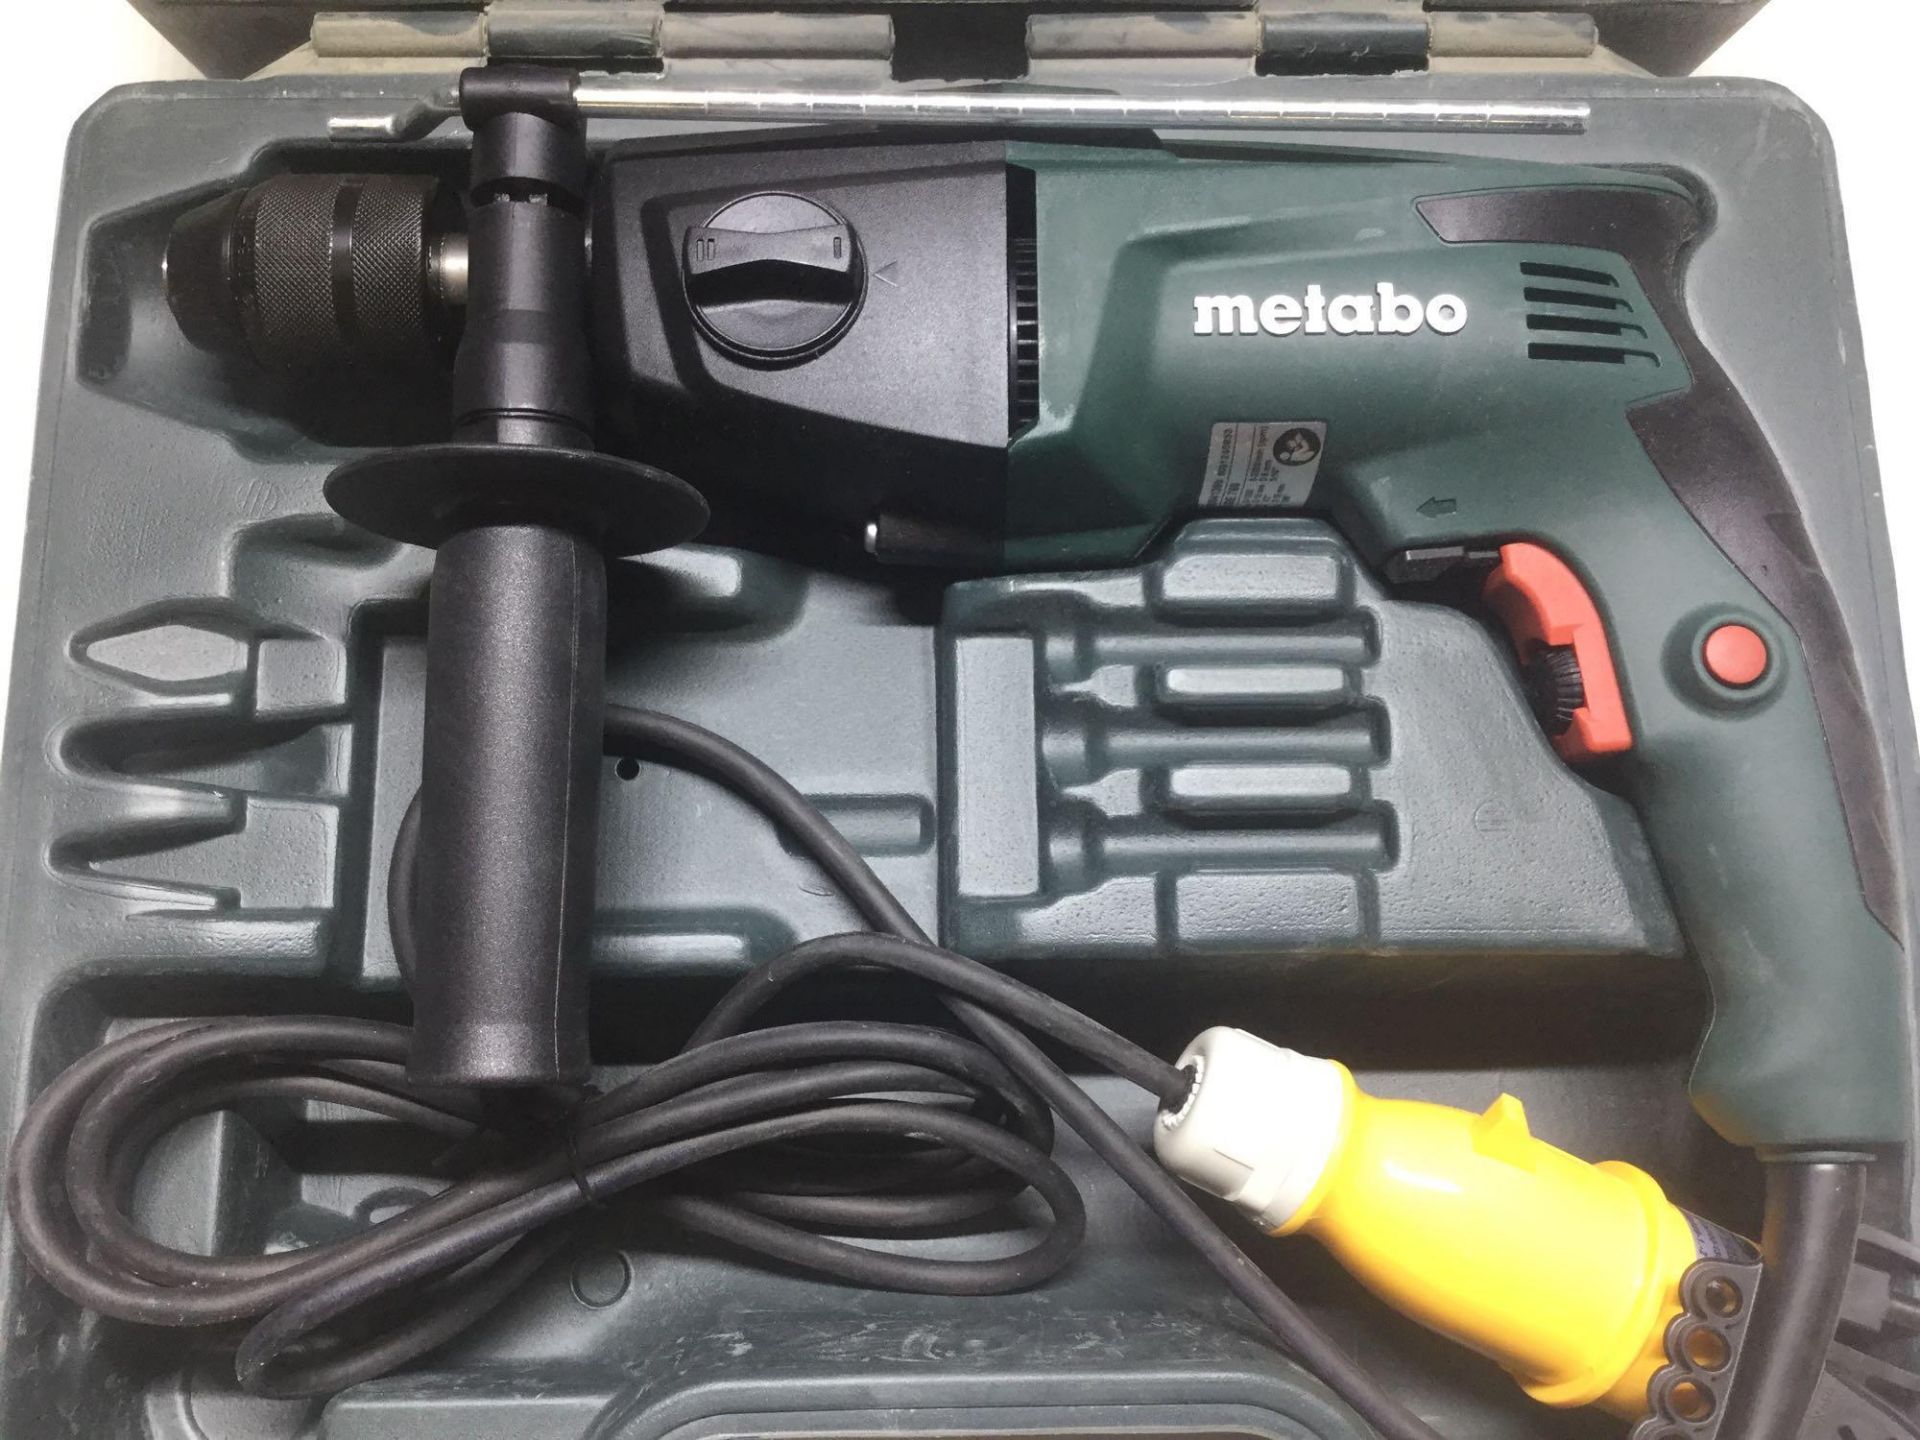 Metabo SBE760 Hammer Drill 110v New in Box - Bild 2 aus 5